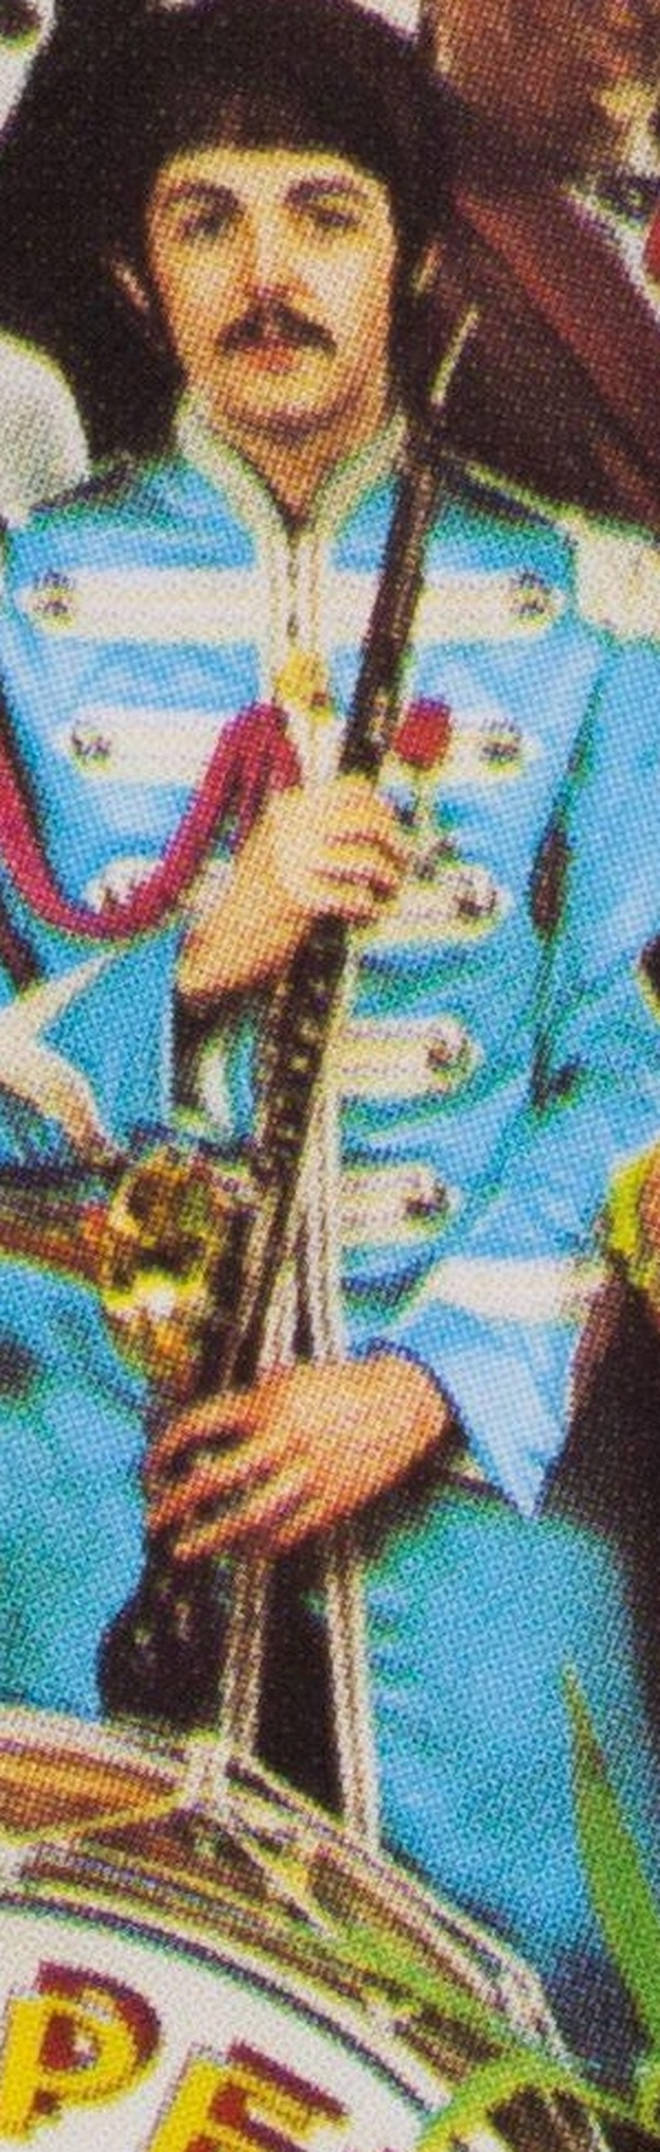 Paul McCartney, holding a cor anglais